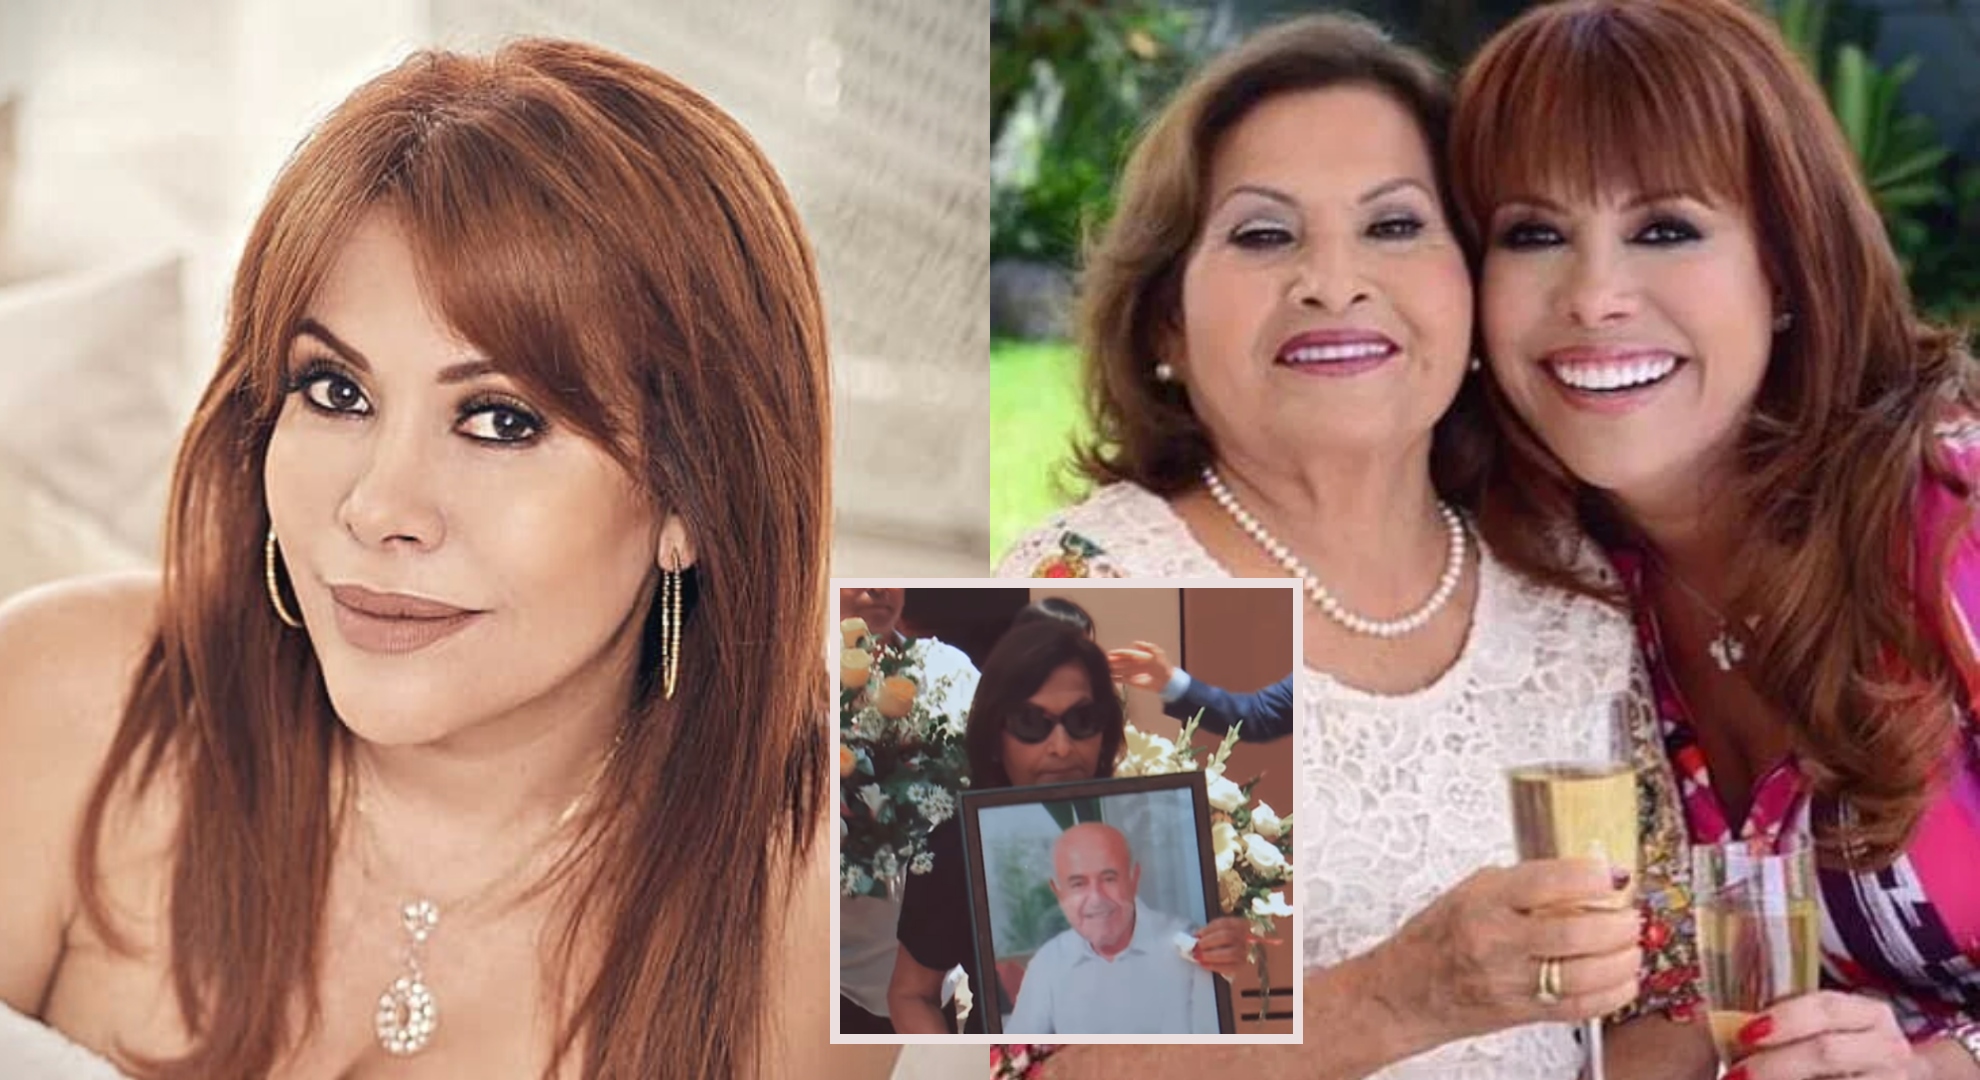 Magaly Medina preocupada por su madre tras la muerte de su papá: “Ella tiene que empezar sola esta vez”